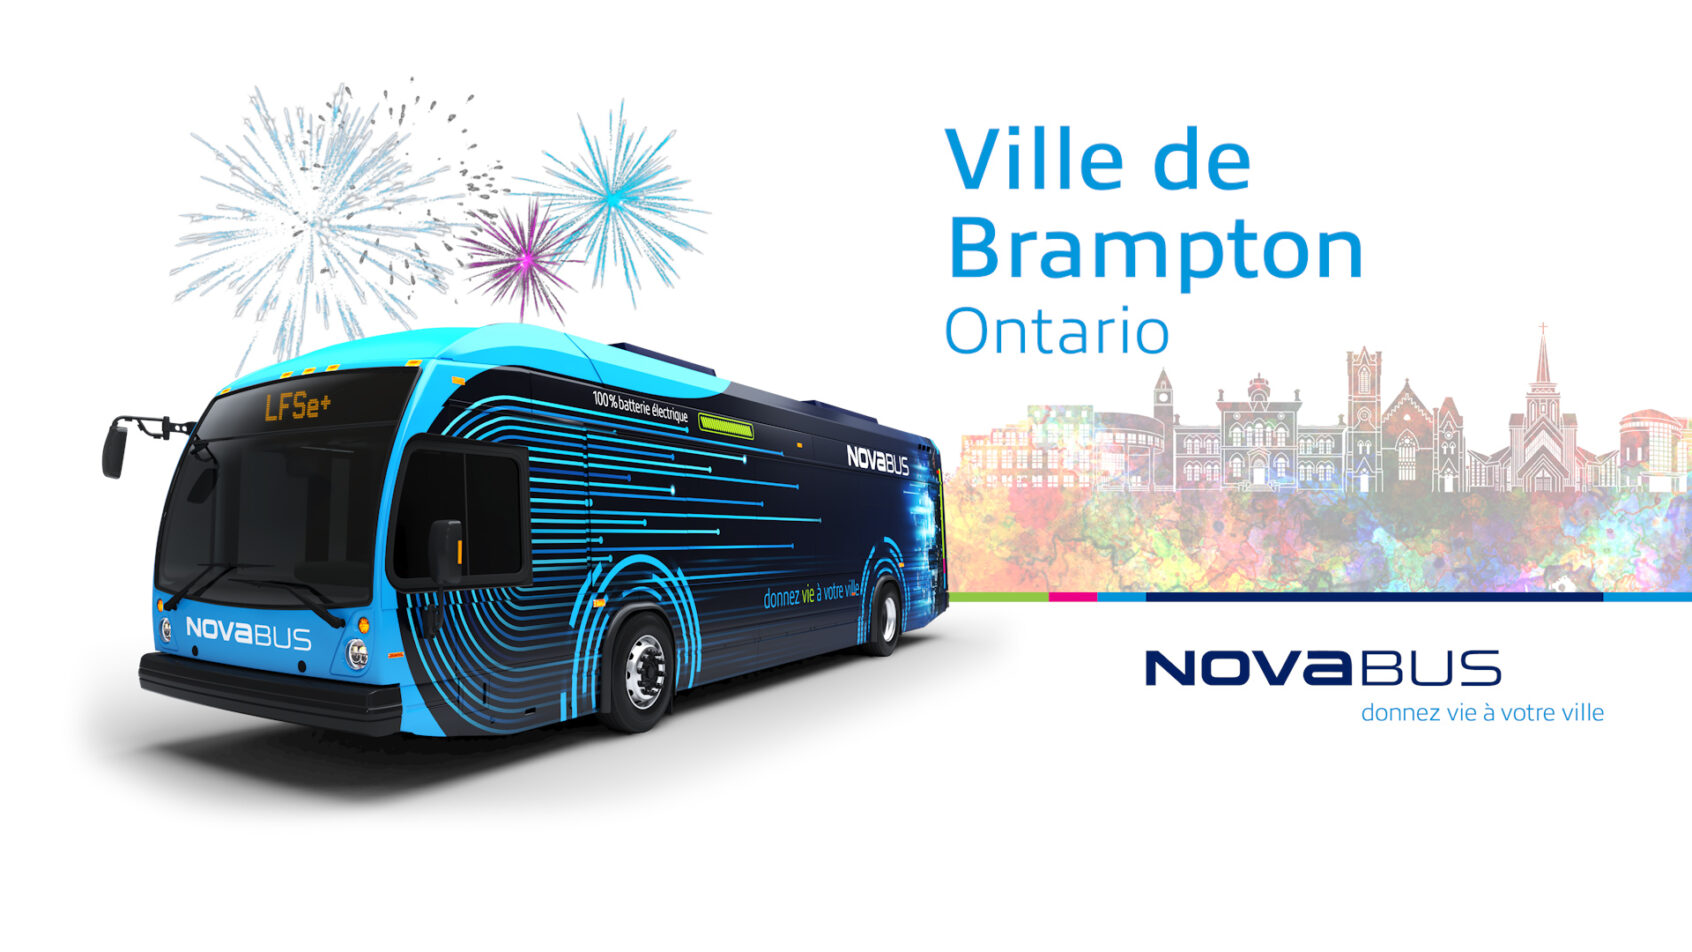 La Ville de Brampton, en Ontario, signe un contrat avec Nova Bus pour l’acquisition de 10 autobus électriques à grande autonomie